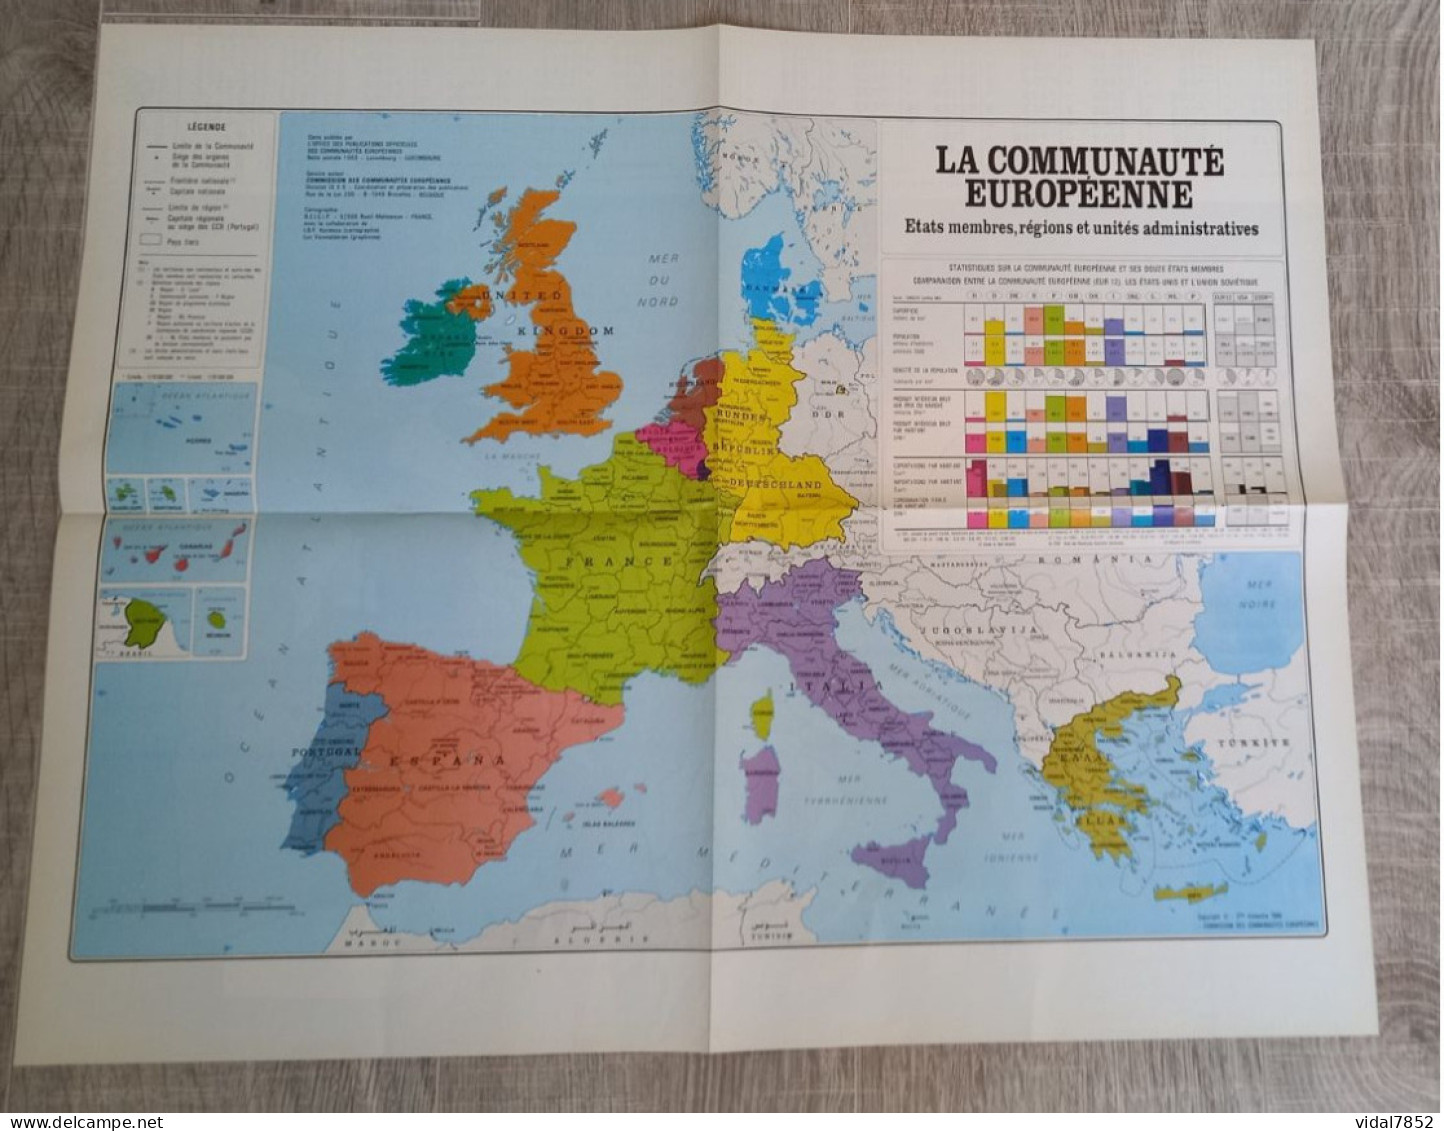 Calendrier-Almanach Des P.T.T 1991-Poster Intérieur Communauté Européenne--Tom Jerry Département AIN-01-Référence 426 - Grand Format : 1991-00